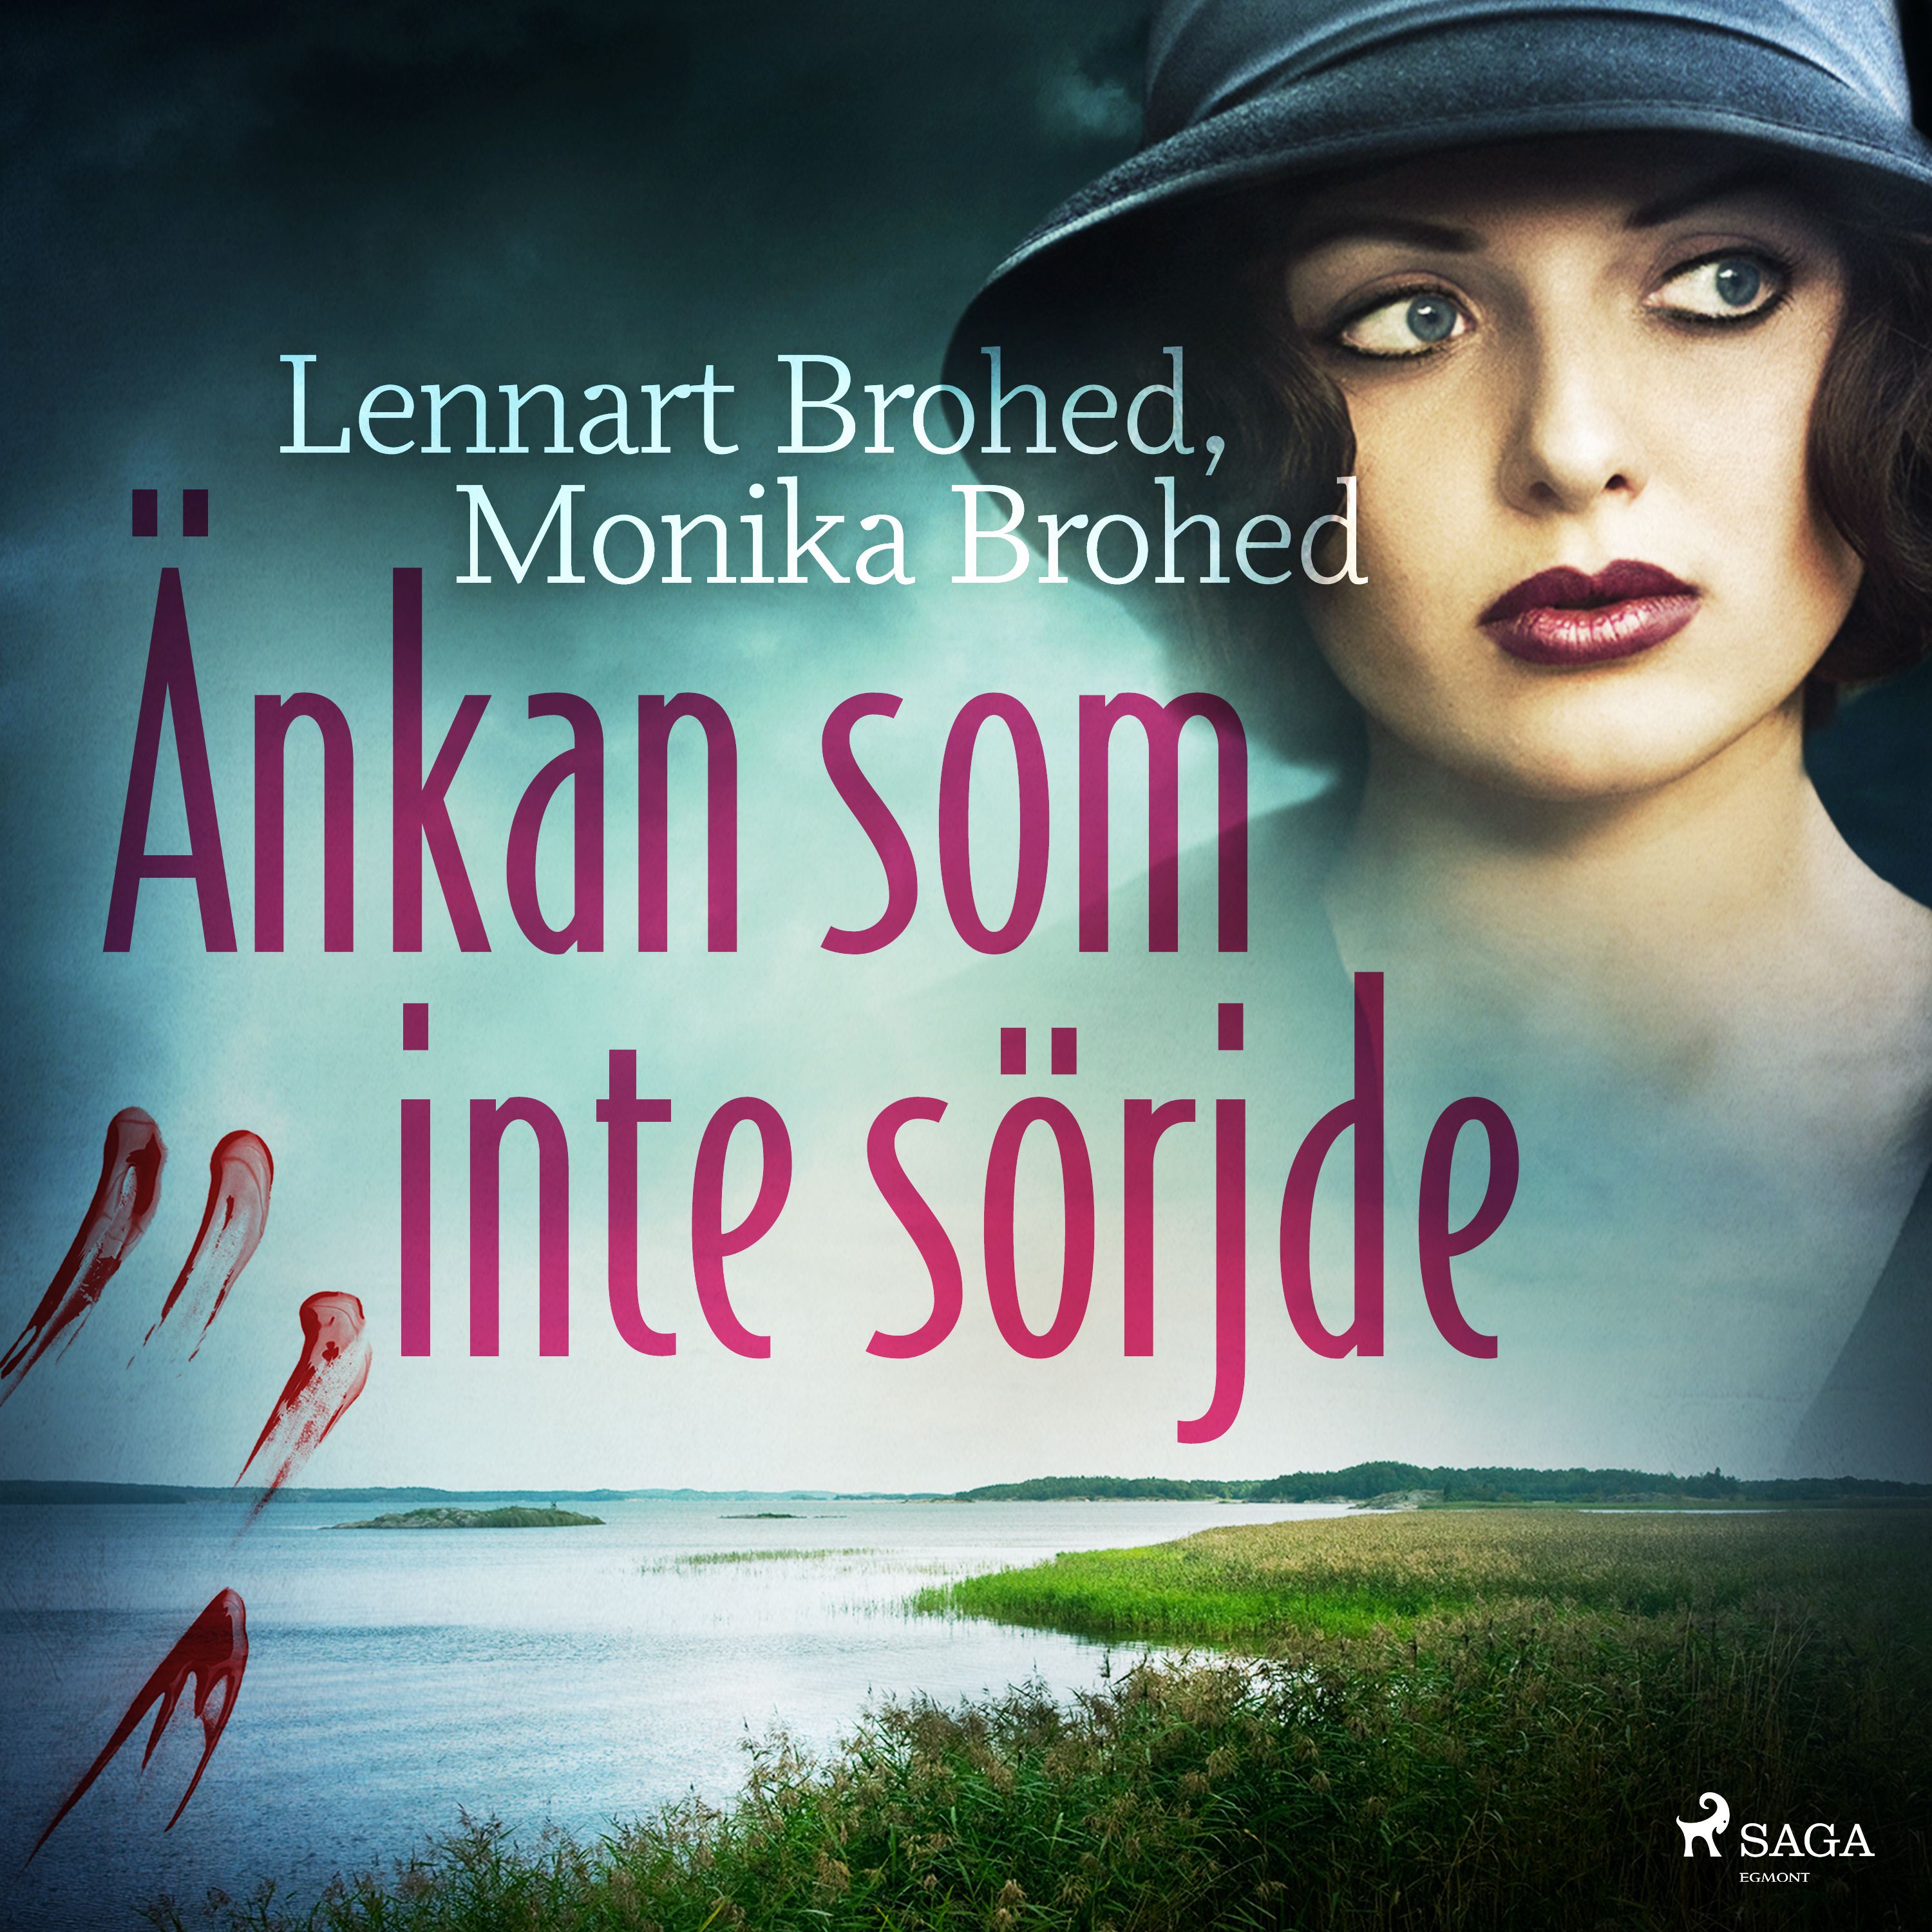 Änkan som inte sörjde, audiobook by Lennart Brohed, Monika Brohed